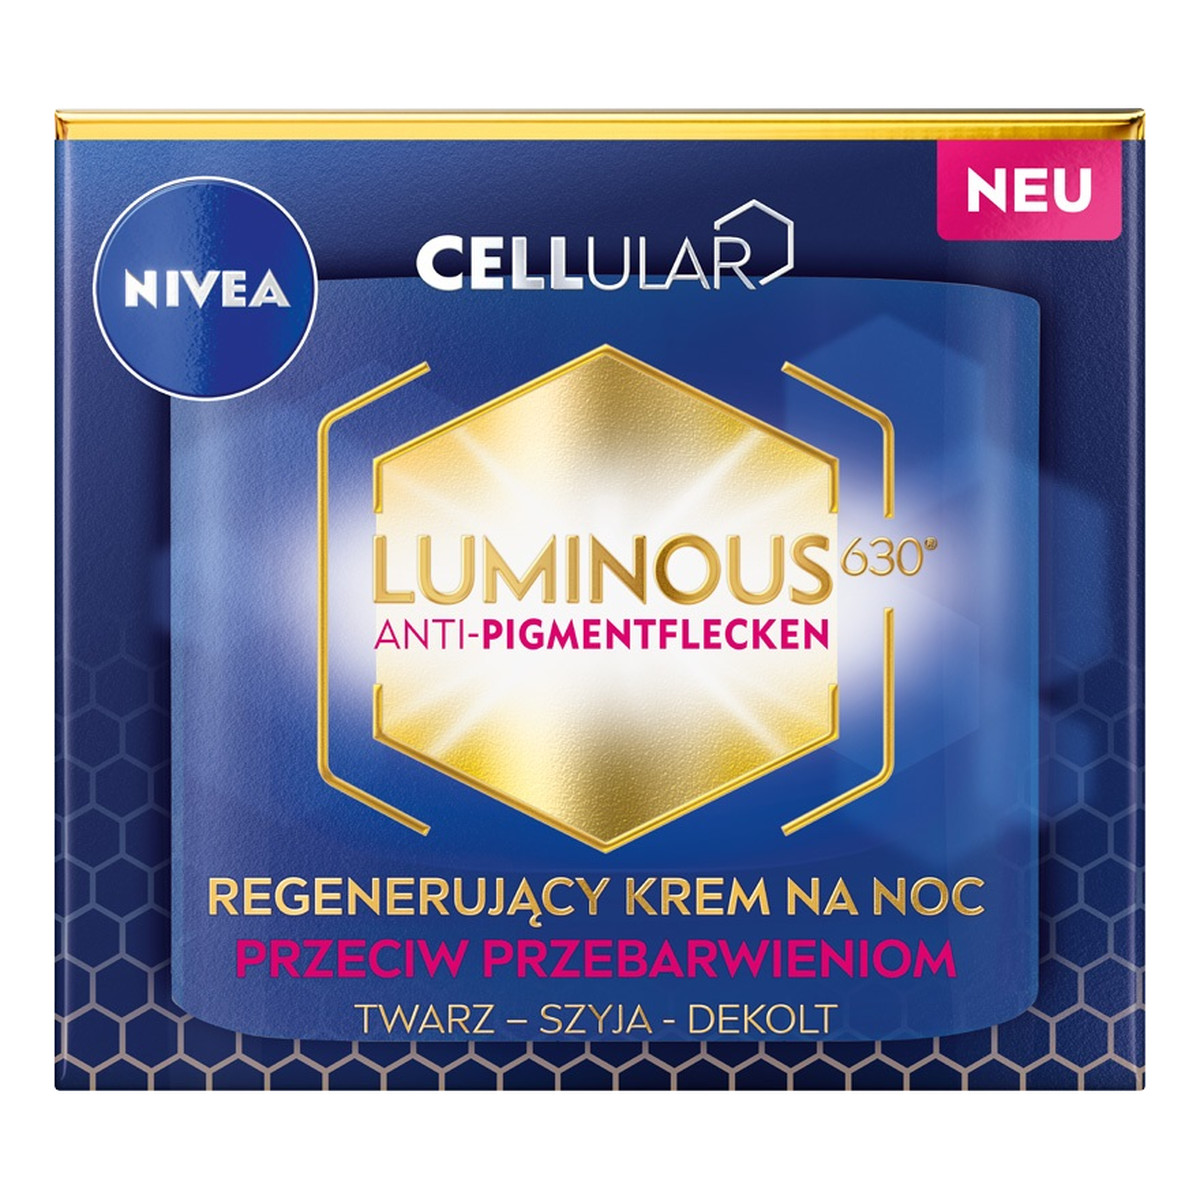 Nivea Cellular Luminous 630® regenerujący Krem na noc przeciw przebarwieniom 50ml